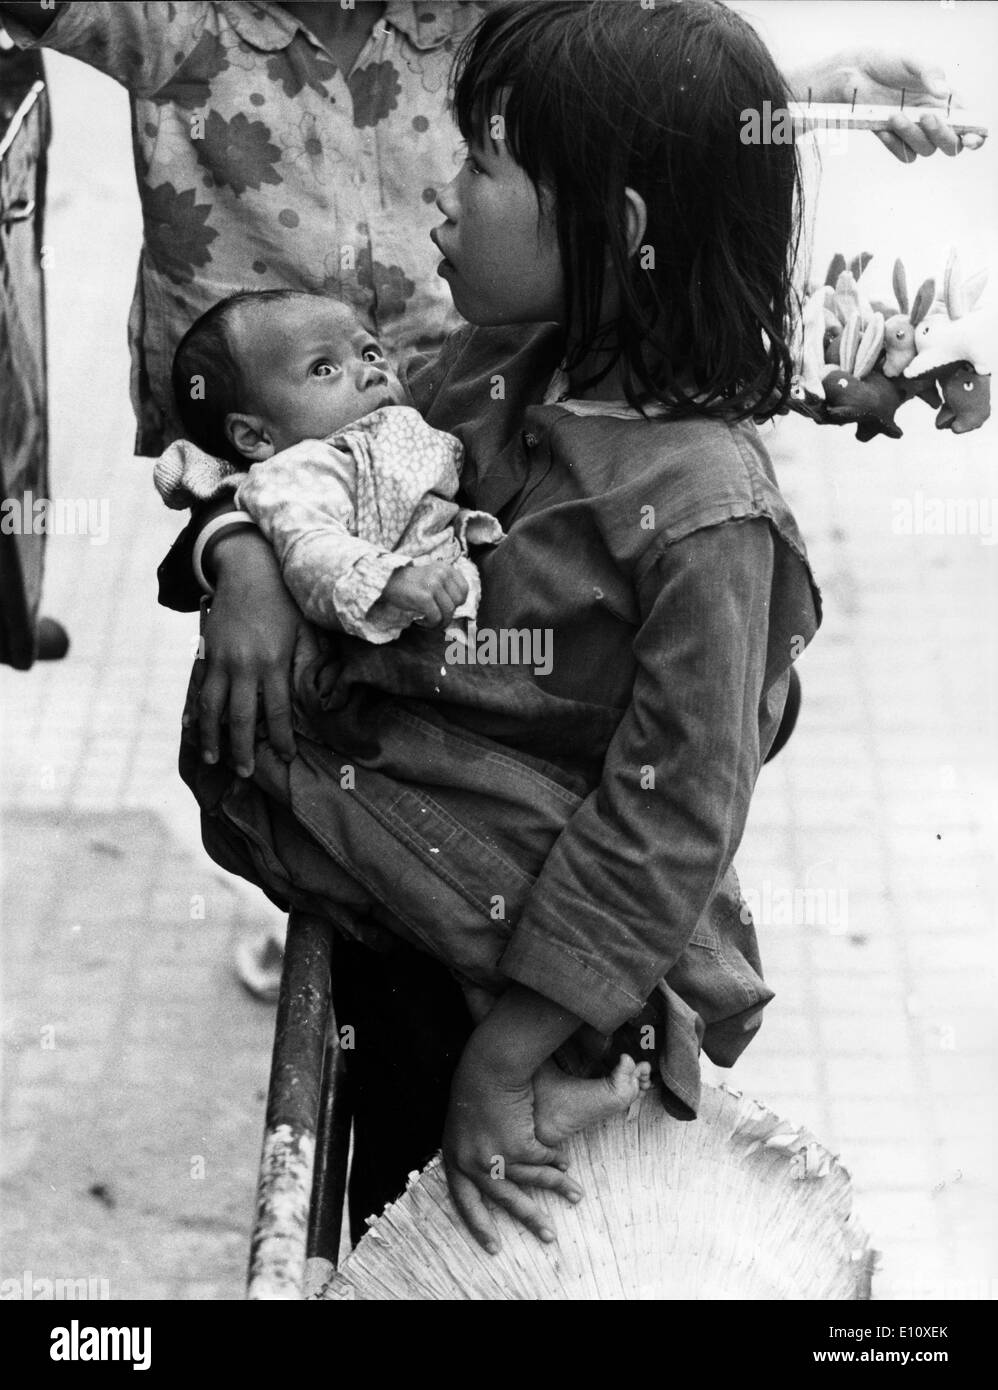 Child beggar during Vietnam war Stock Photo